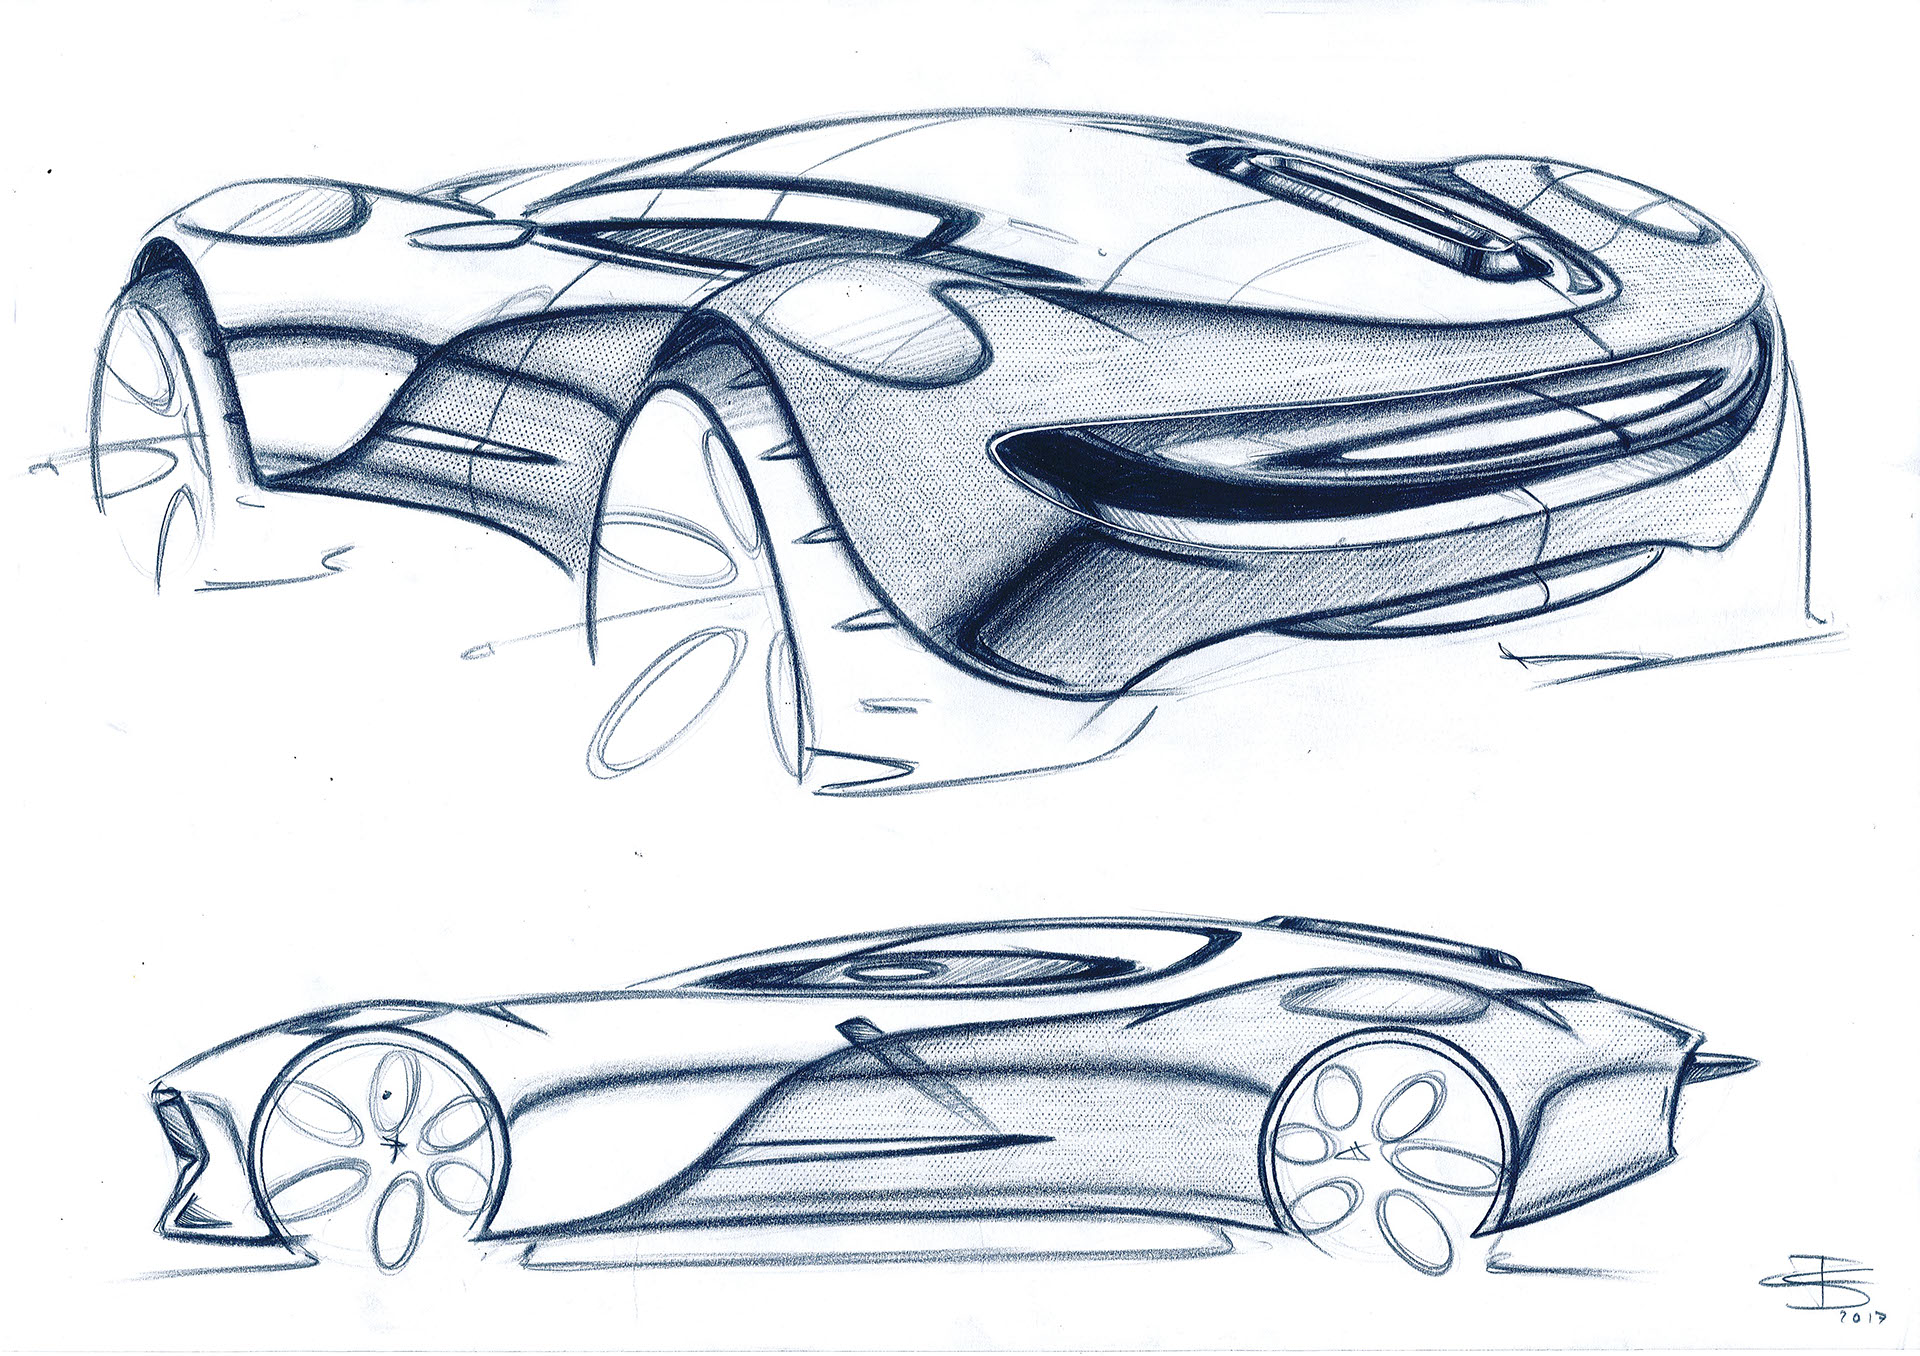 捷豹gran turismo概念汽车设计——好的手绘是设计的基础!